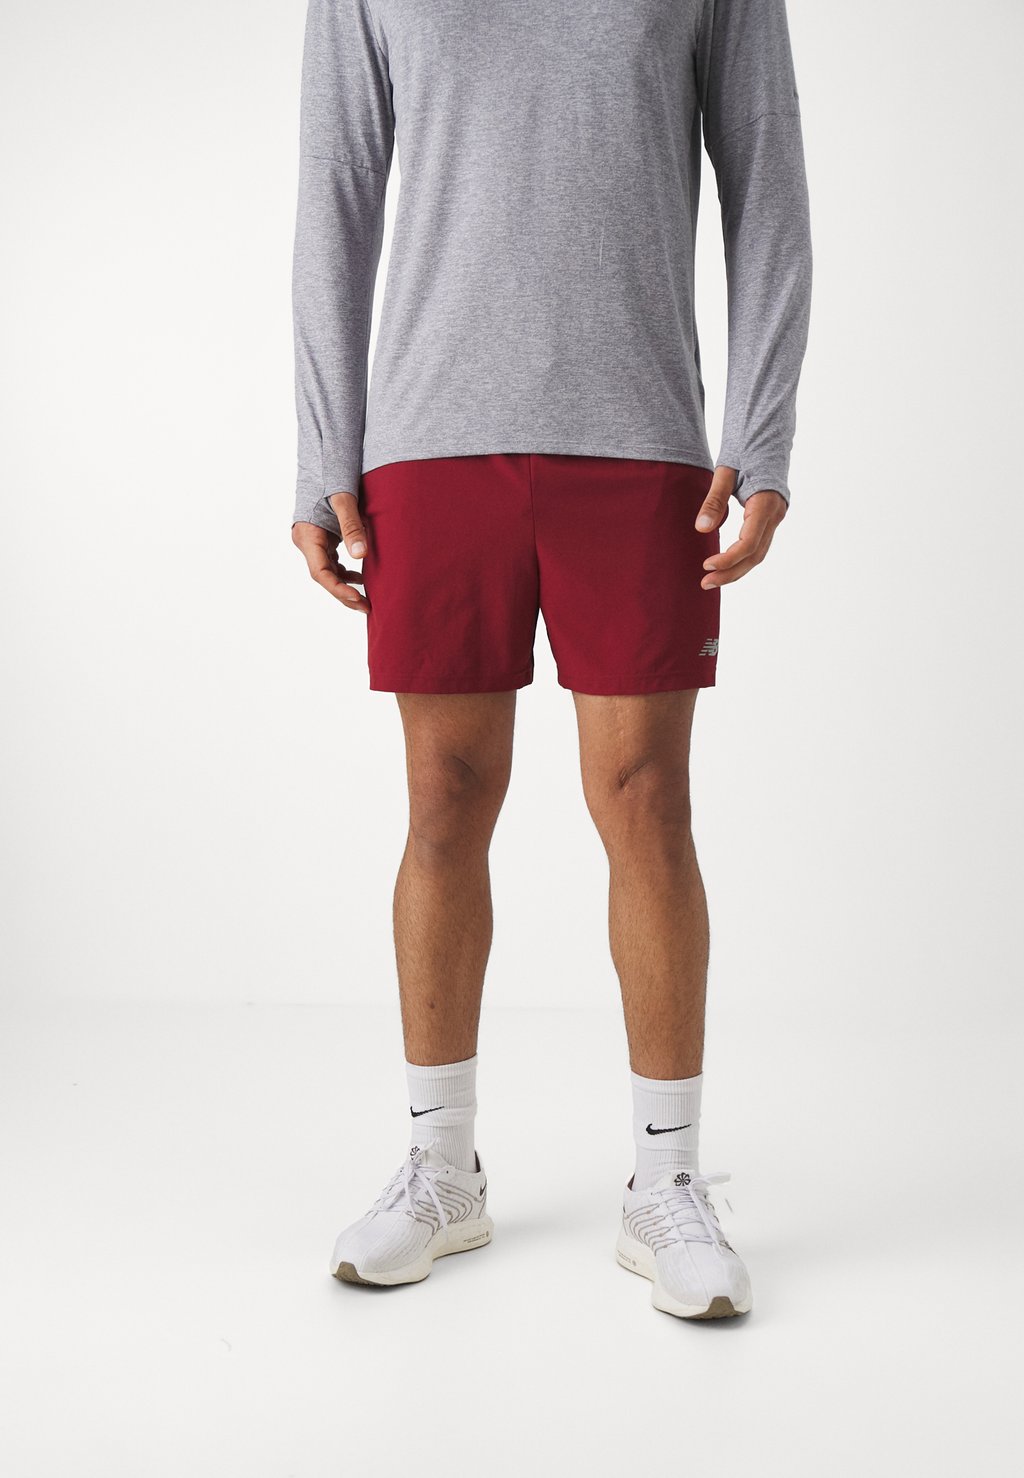 Спортивные шорты Short 5 Inch New Balance, цвет mercury red